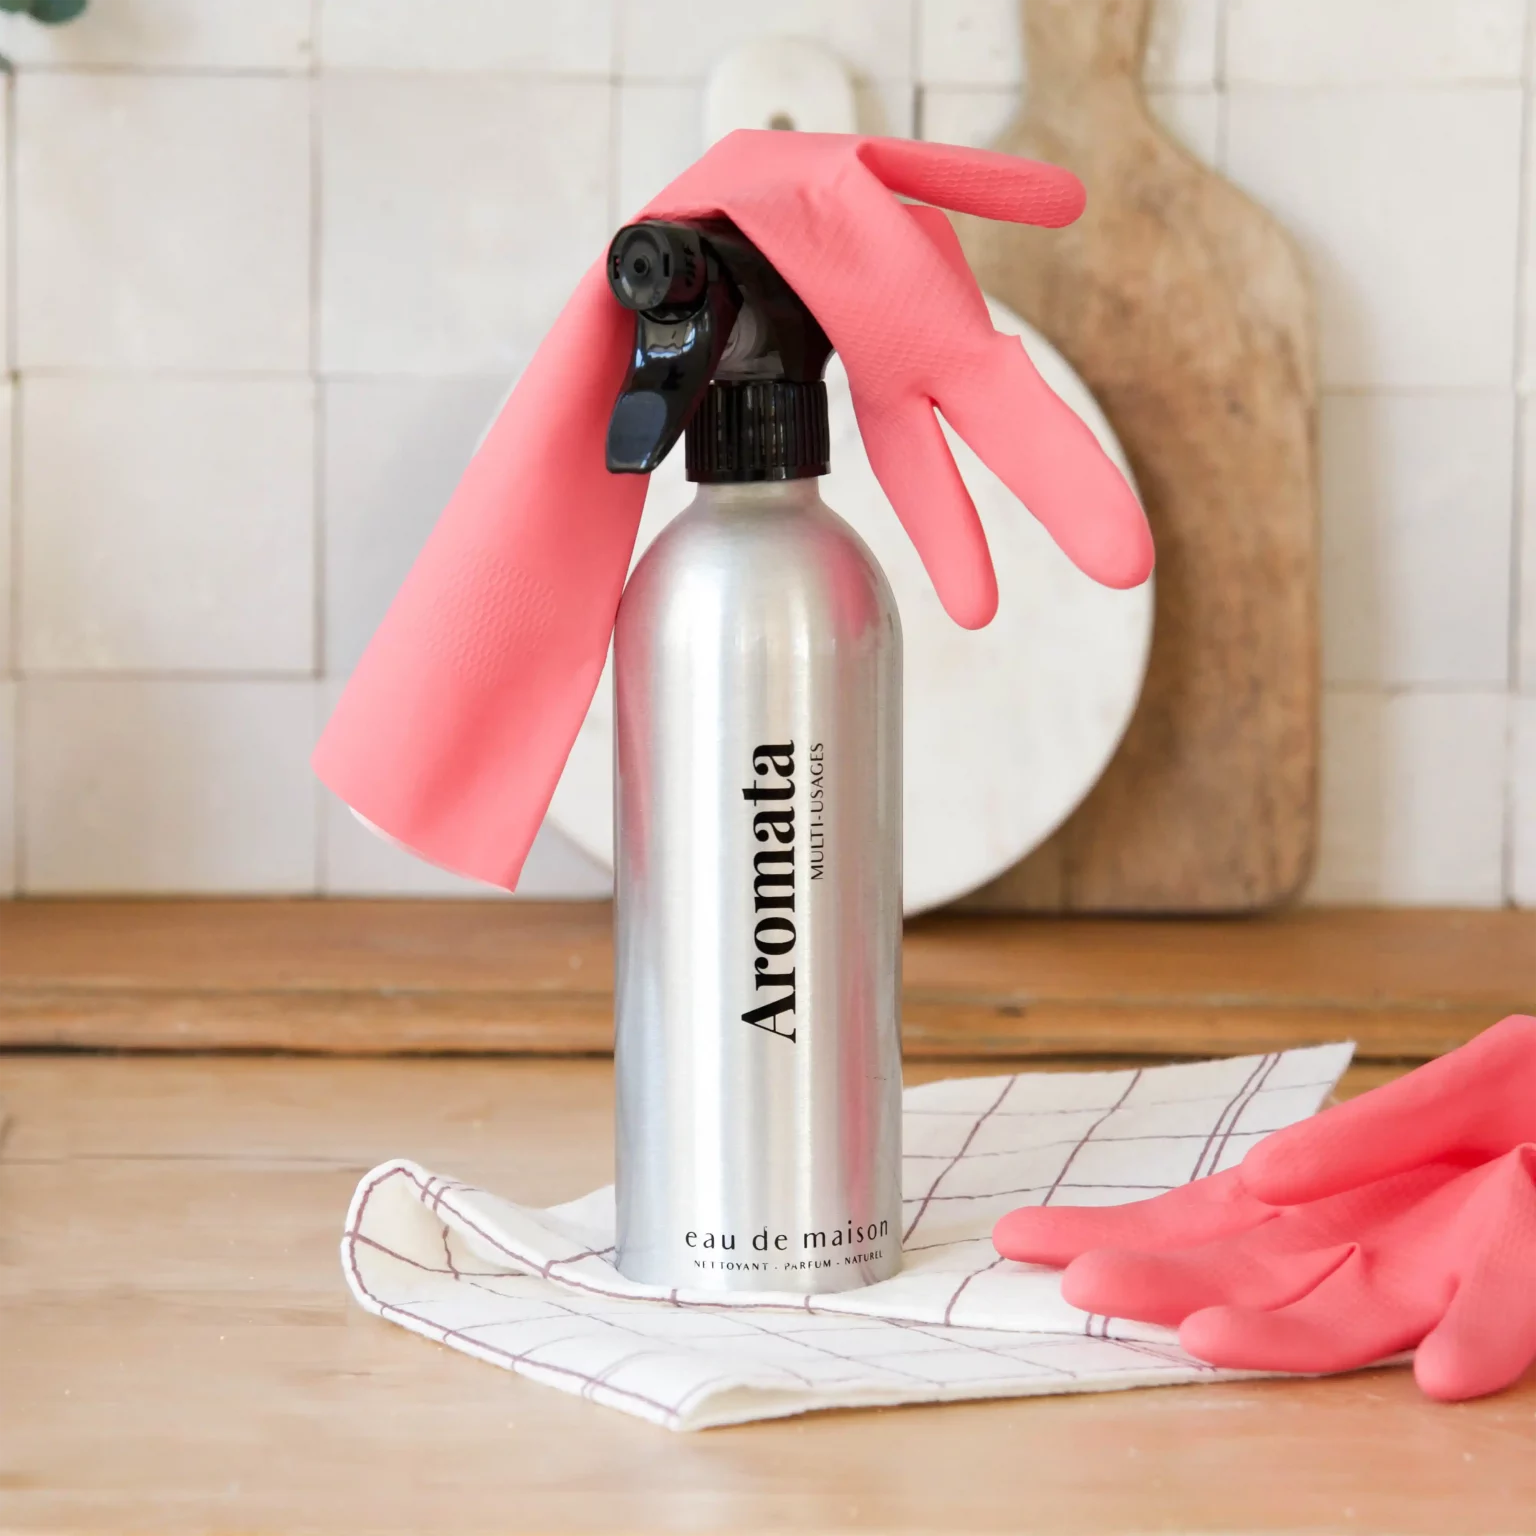 Anticalcaire Concentré Parfumé Spray 1 litre – CLEAN 26